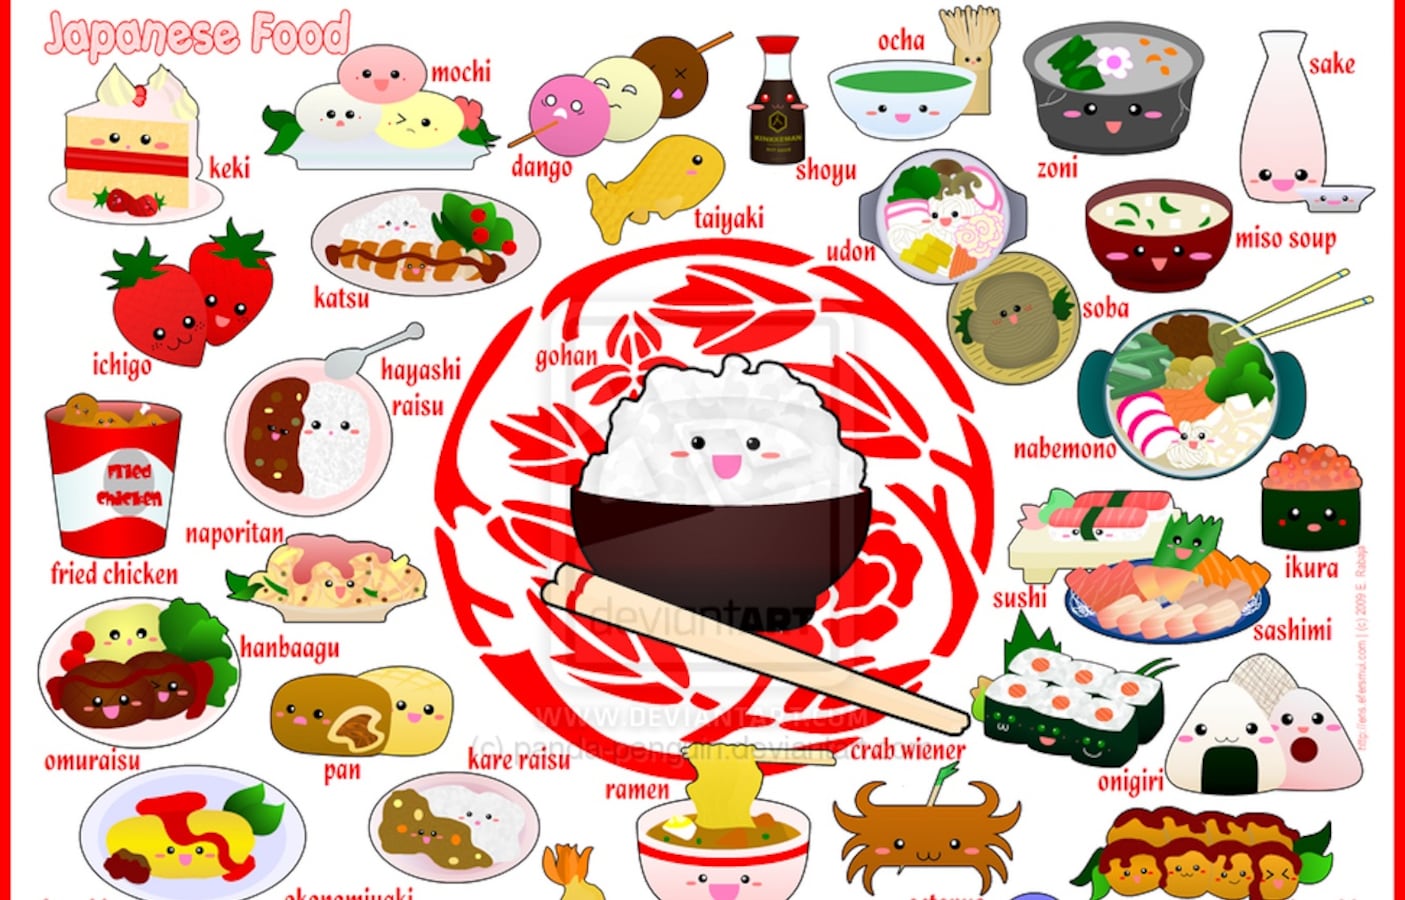 Топик еда. Японские блюда названия. Японская еда рисунки. Японские блюда на английском. Японские блюда иллюстрации с названиями.